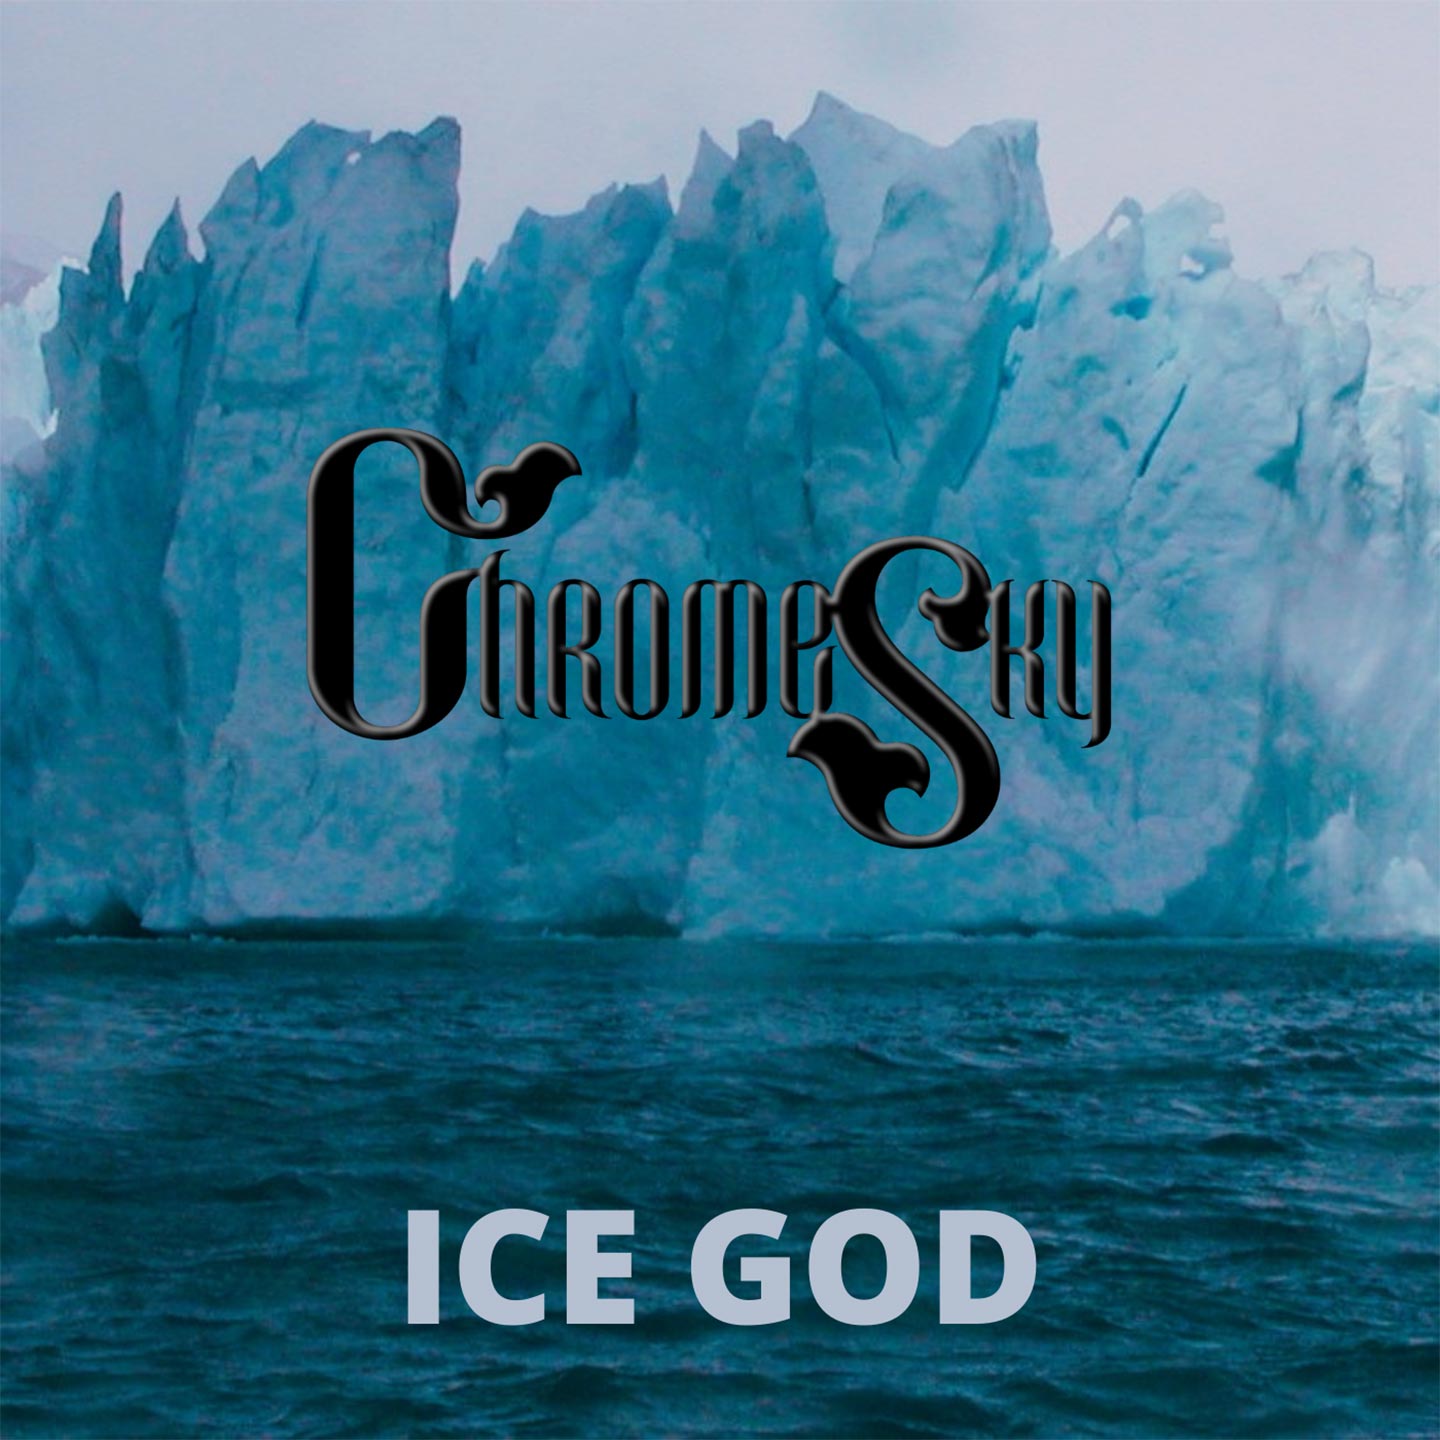 Chrome Sky – “Ice God”